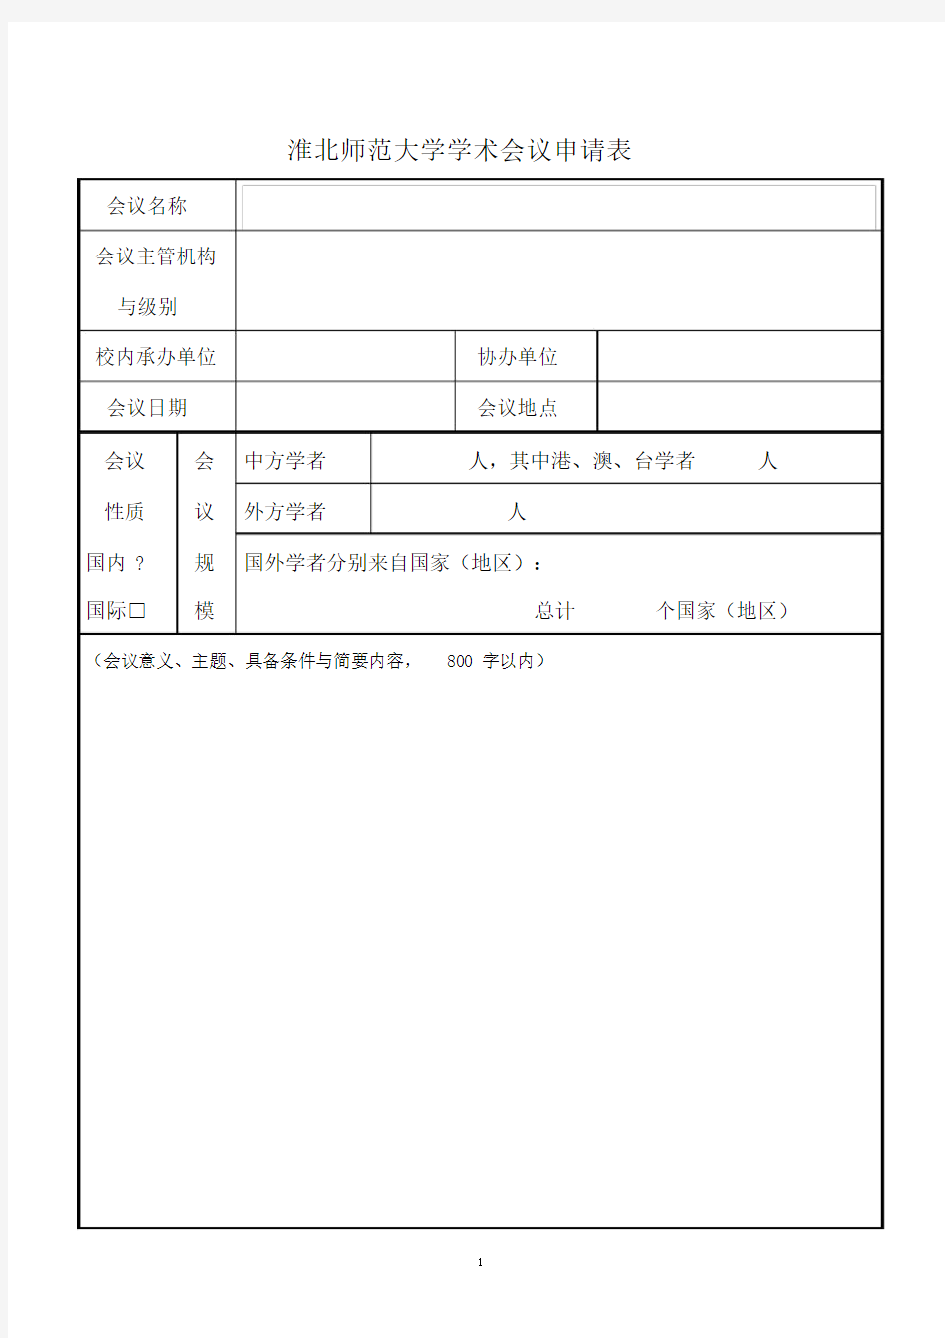 学术会议申请表(新).docx